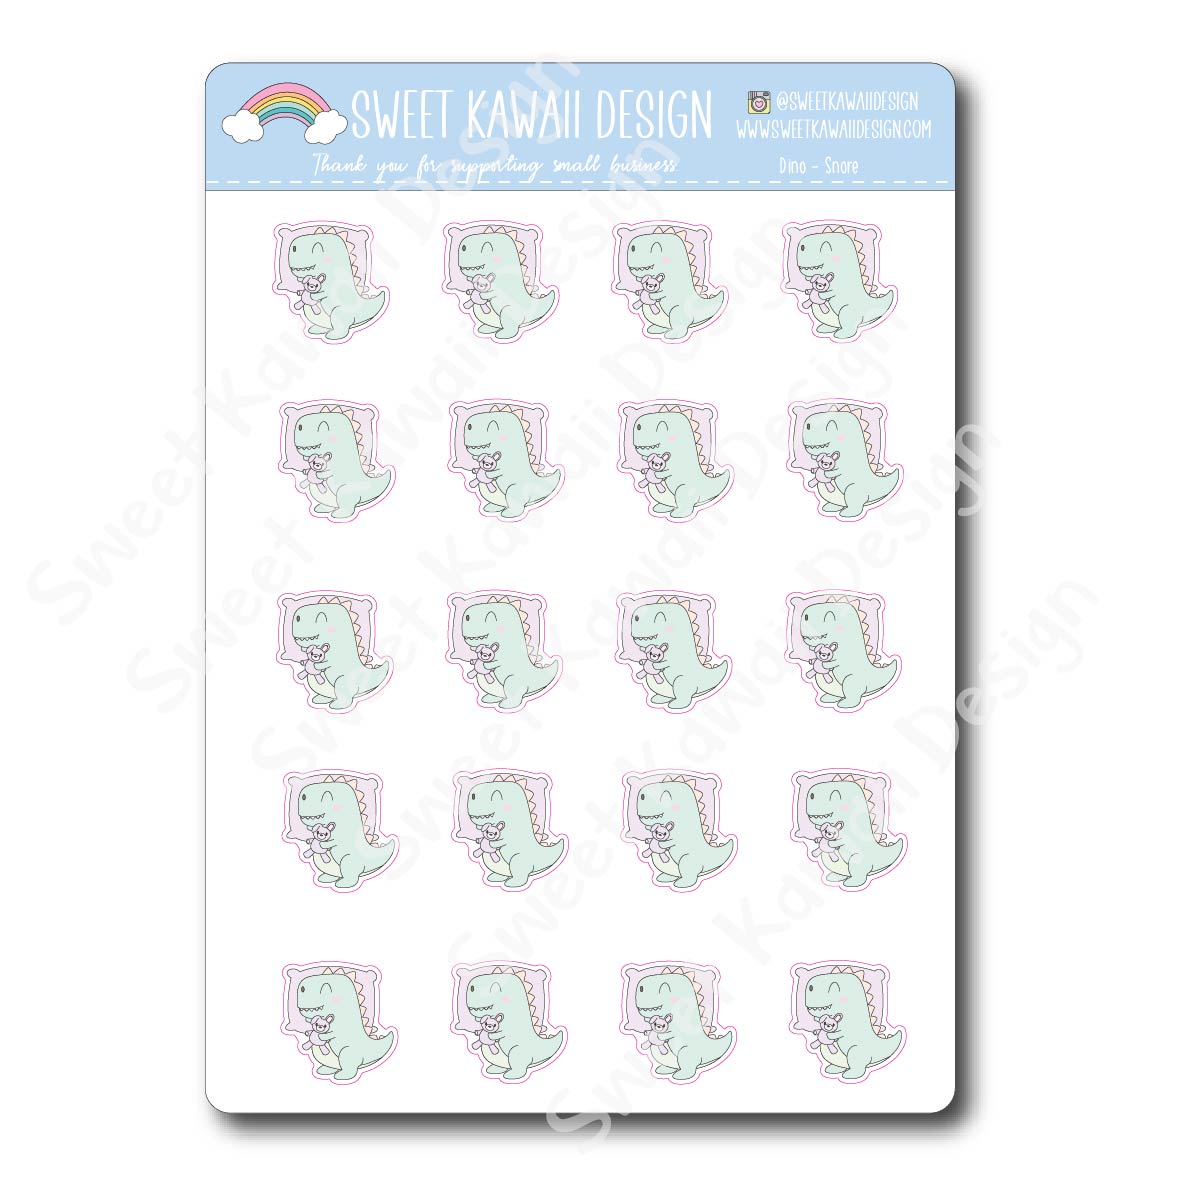 Kawaii Dino Stickers - Dino-snore